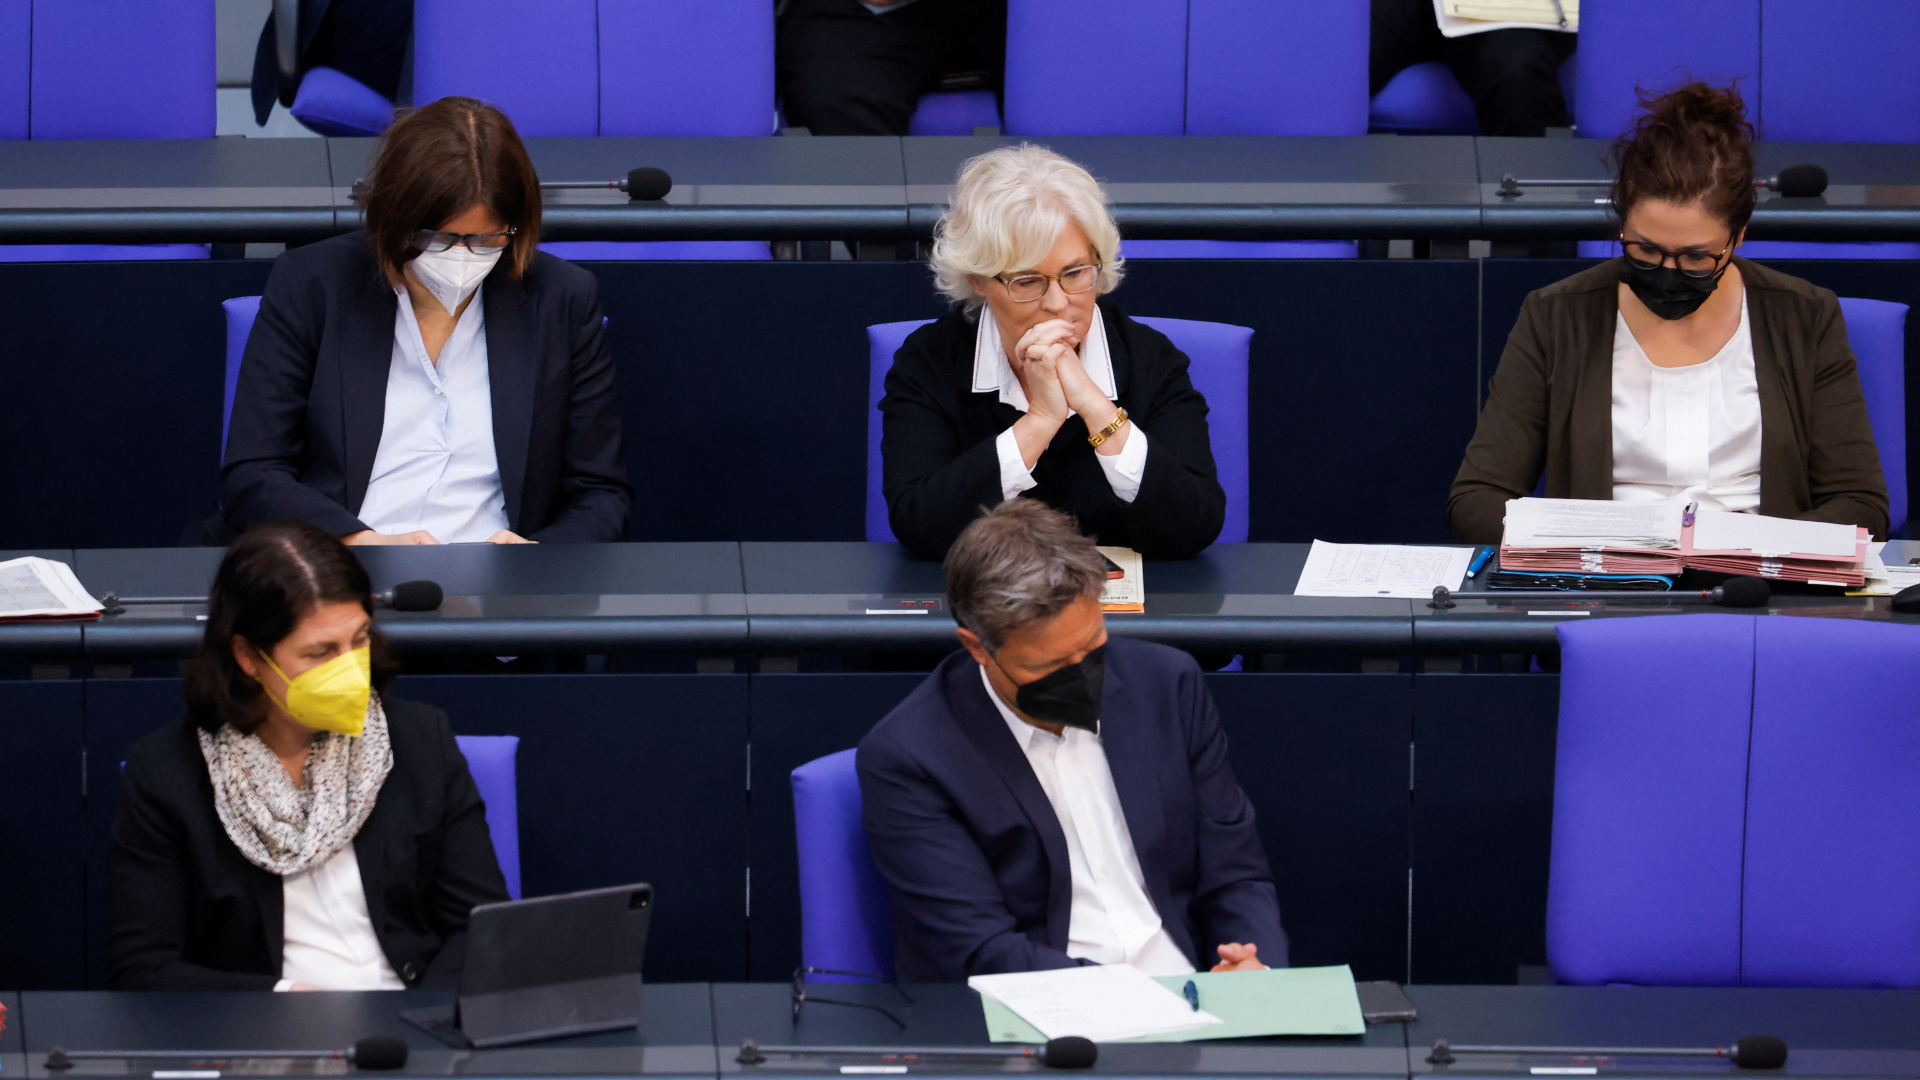 Freier Platz des abwesenden Olaf Scholz im Bundestag | REUTERS